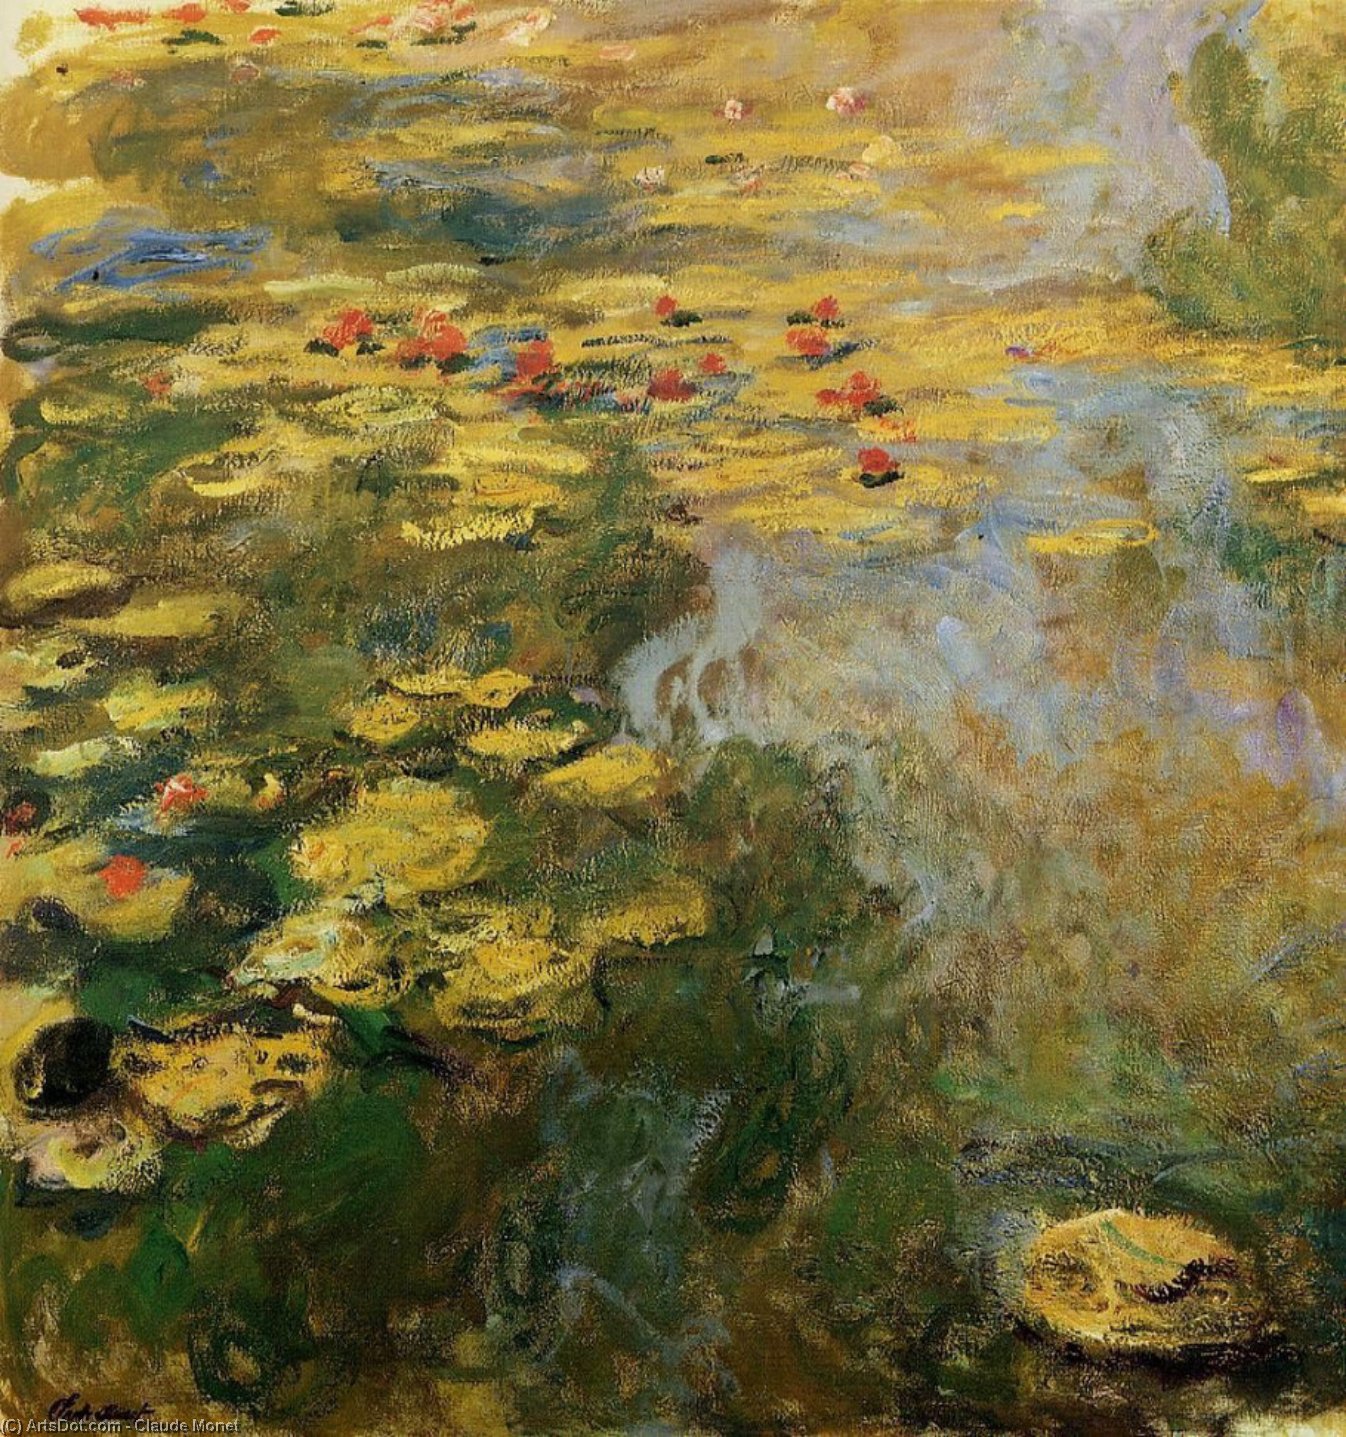 Compra Riproduzioni D'arte Del Museo Lo stagno Water-Lily (lato sinistro), 1917 di Claude Monet (1840-1926, France) | ArtsDot.com